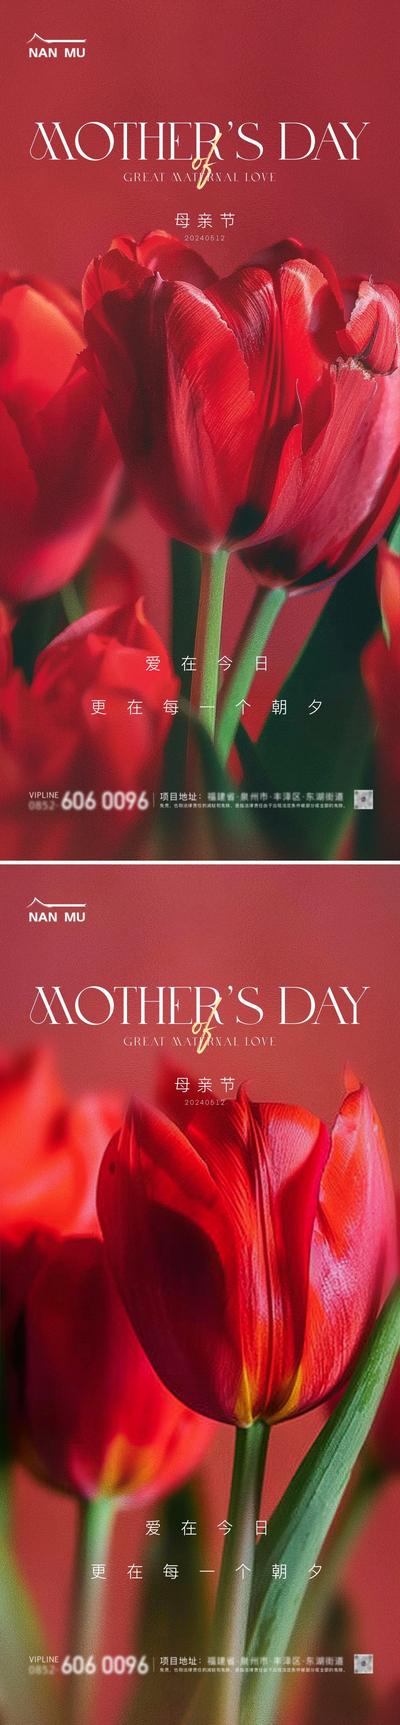 【南门网】广告 海报 地产 母亲节 节日 高端 质感 创意 系列 红色 郁金香 高级 房地产